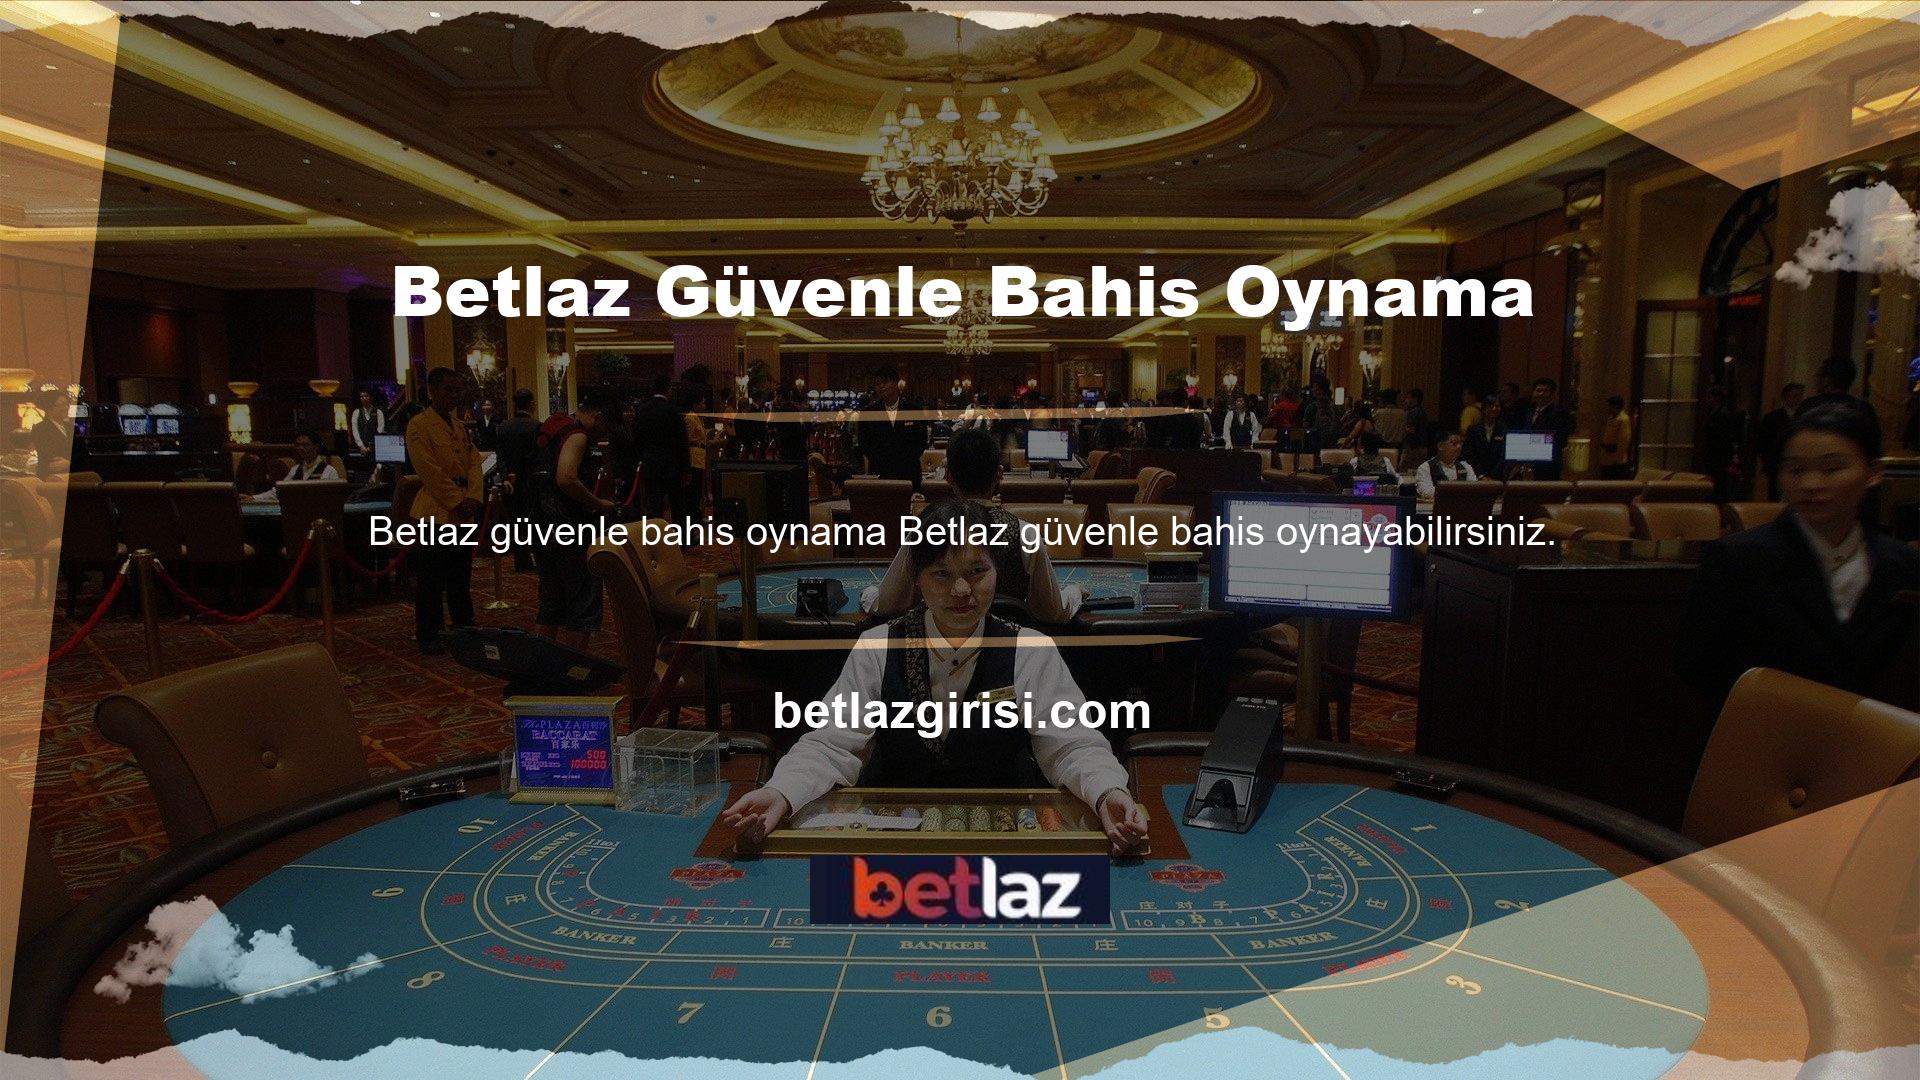 Betlaz bu fırsatı Türk casino ve canlı casino oyuncularına uzun süredir sunmakta ve bu alanda lider konumunu sürdürmektedir